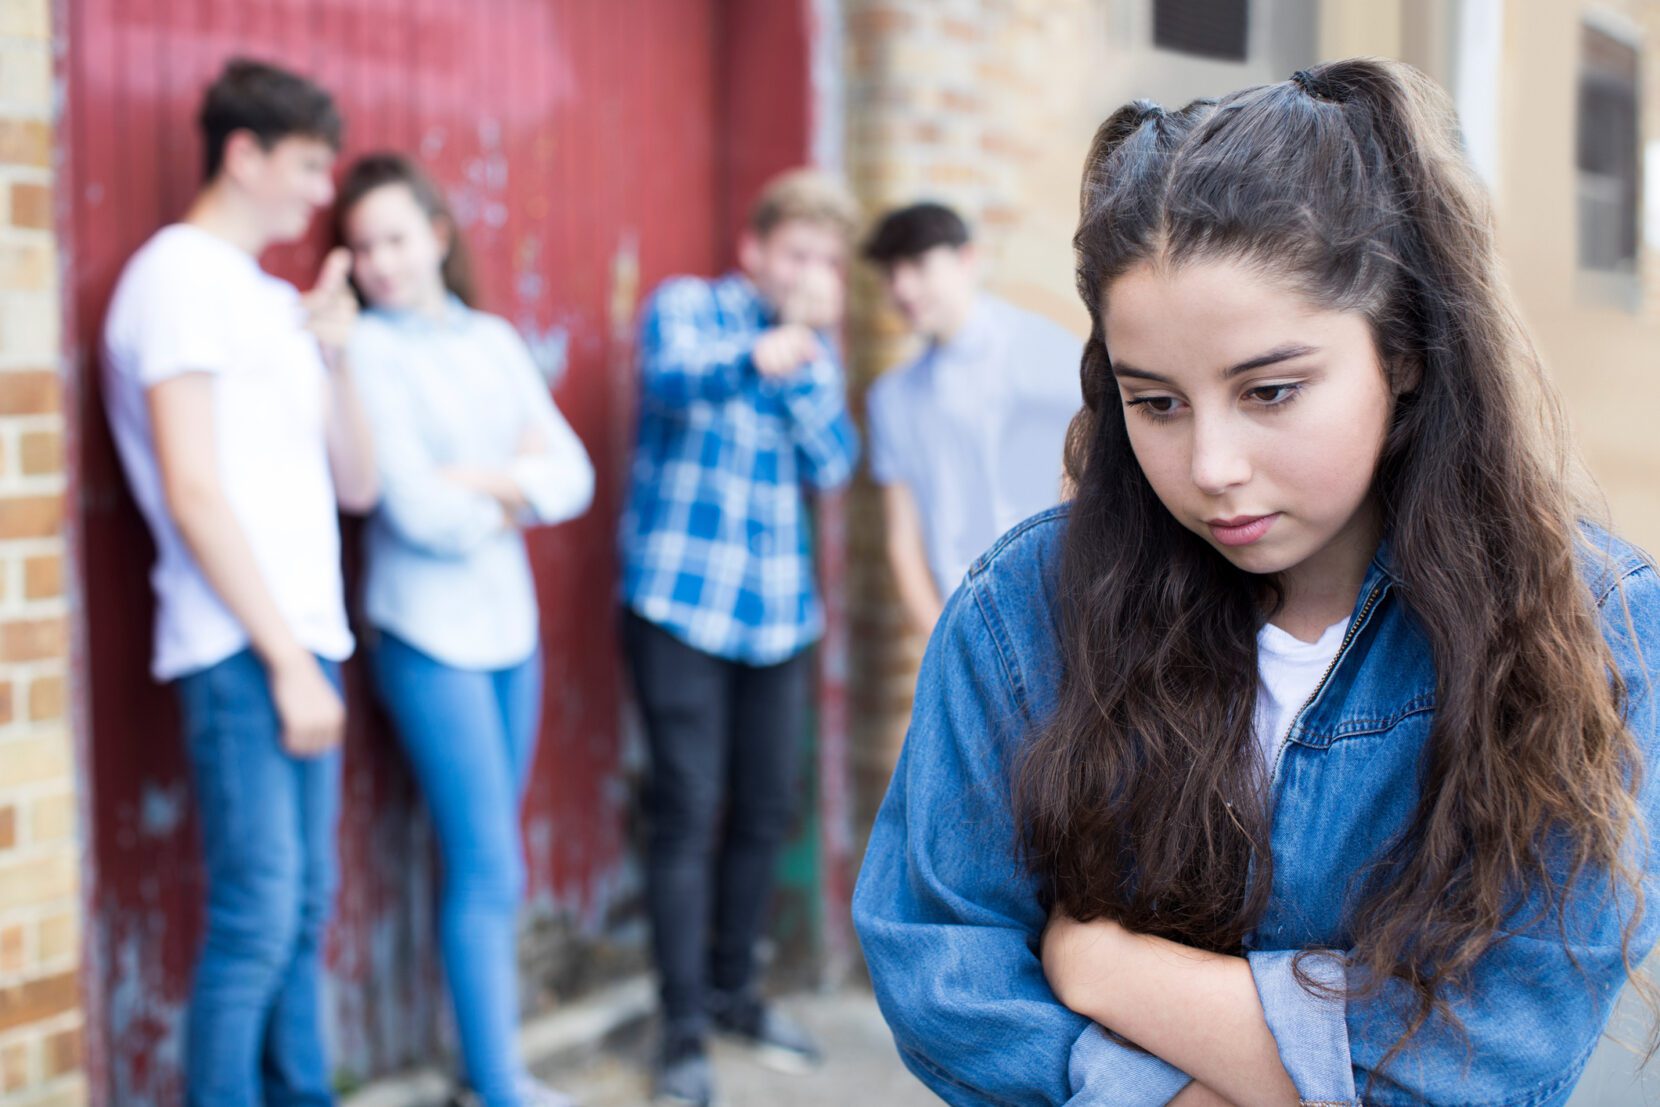 Dr. Julie Allison Sheds Light on What Teen Dating Violence Looks Like